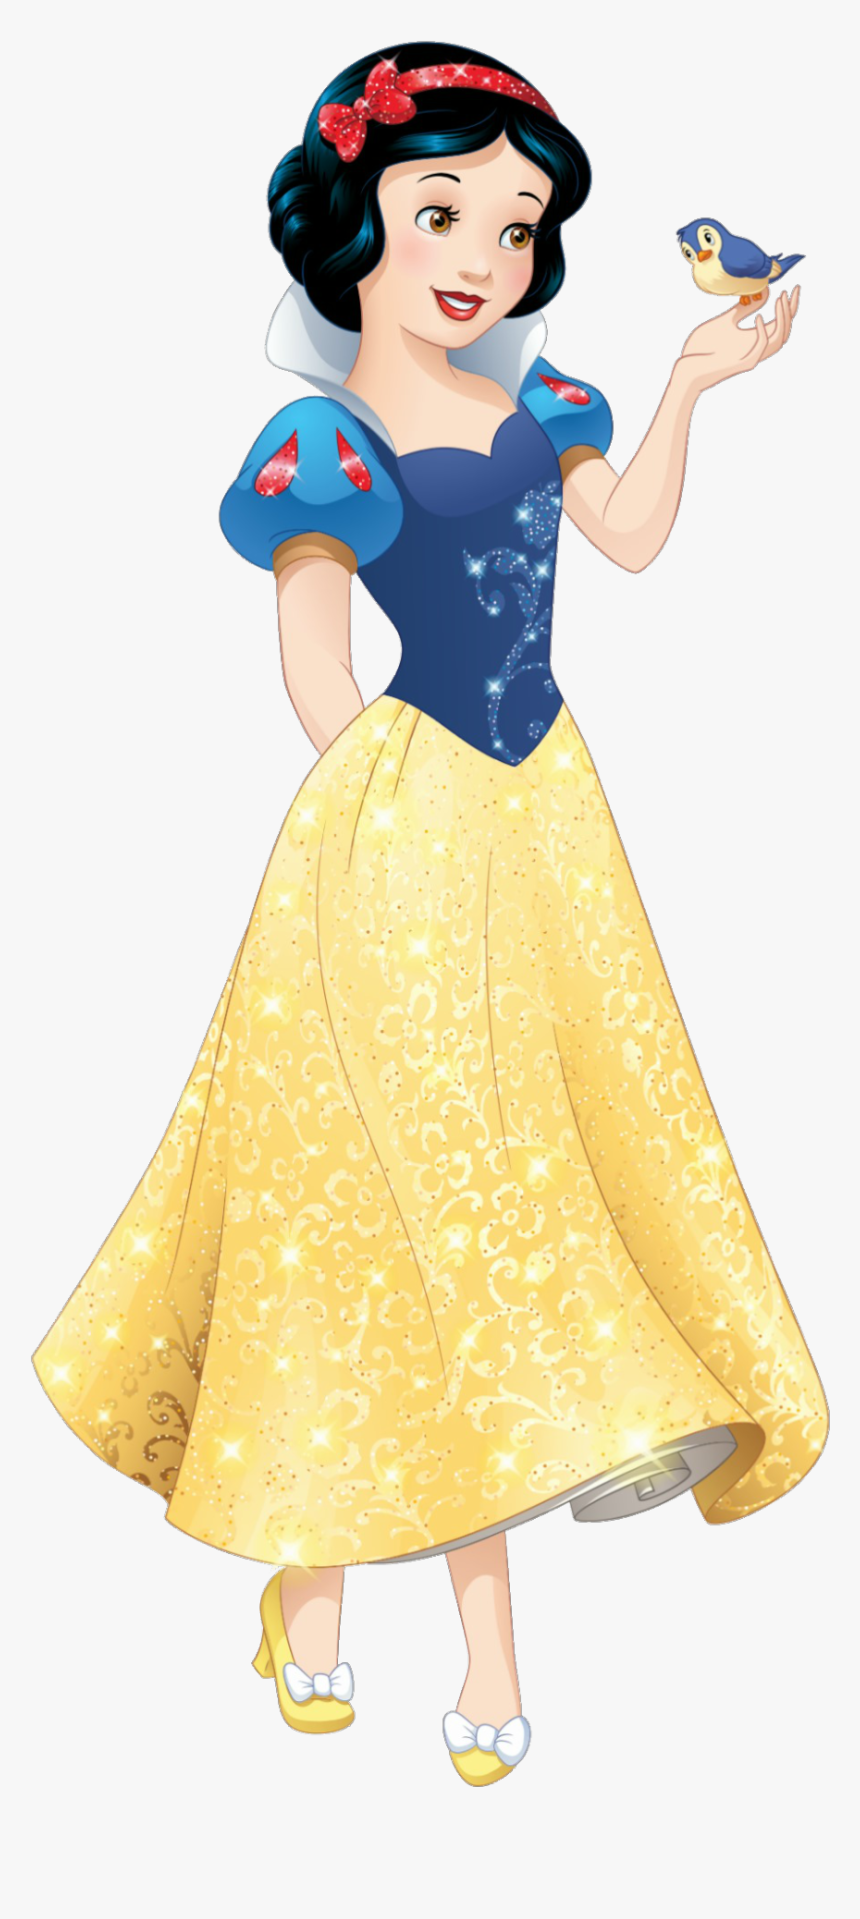 Nàng Bạch Tuyết Disney Công chúa Png, Transparent Png (Snow White Disney Princess Png, Transparent Png): Lấy cảm hứng từ vẻ đẹp kiêu sa của Disney Công chúa Nàng Bạch Tuyết, những bức tranh PNG trong suốt này sẽ làm cho máy tính của bạn trở nên đẹp hơn. Với phông nền độc đáo, những bức ảnh sẽ tạo ra một khung cảnh đầy mơ mộng cho máy tính của bạn.